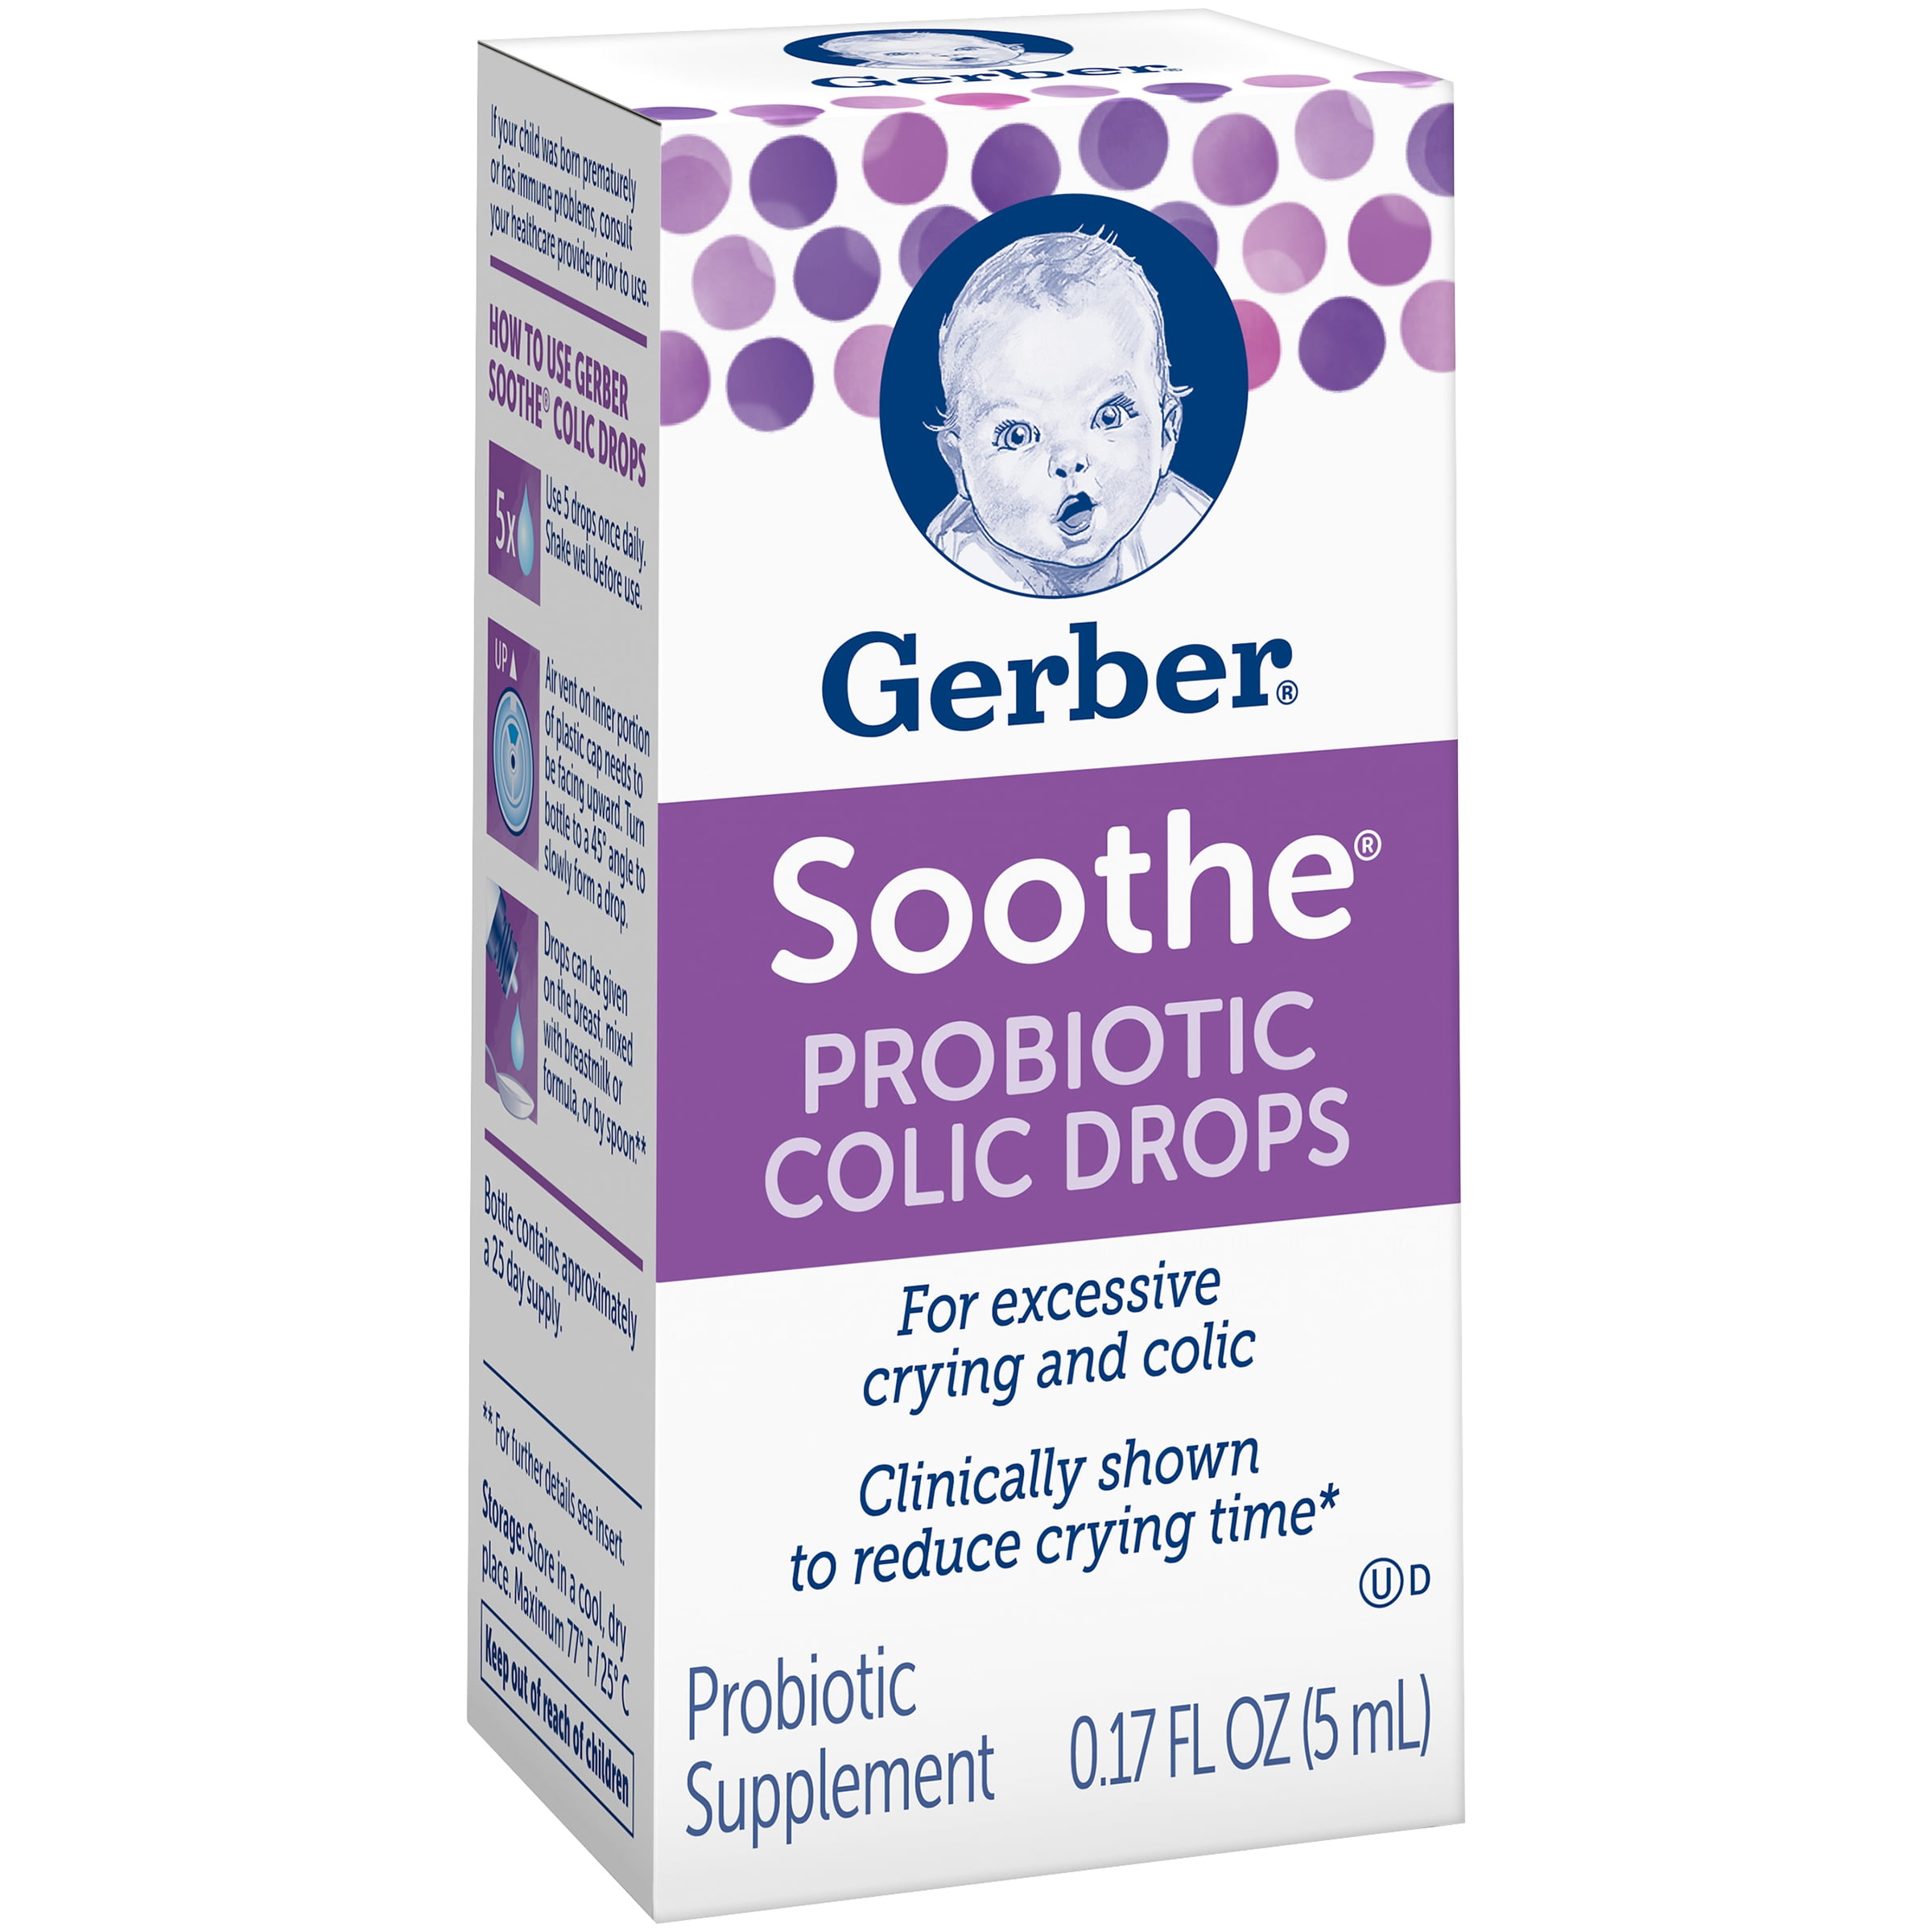 soothe probiotic colic drops en español